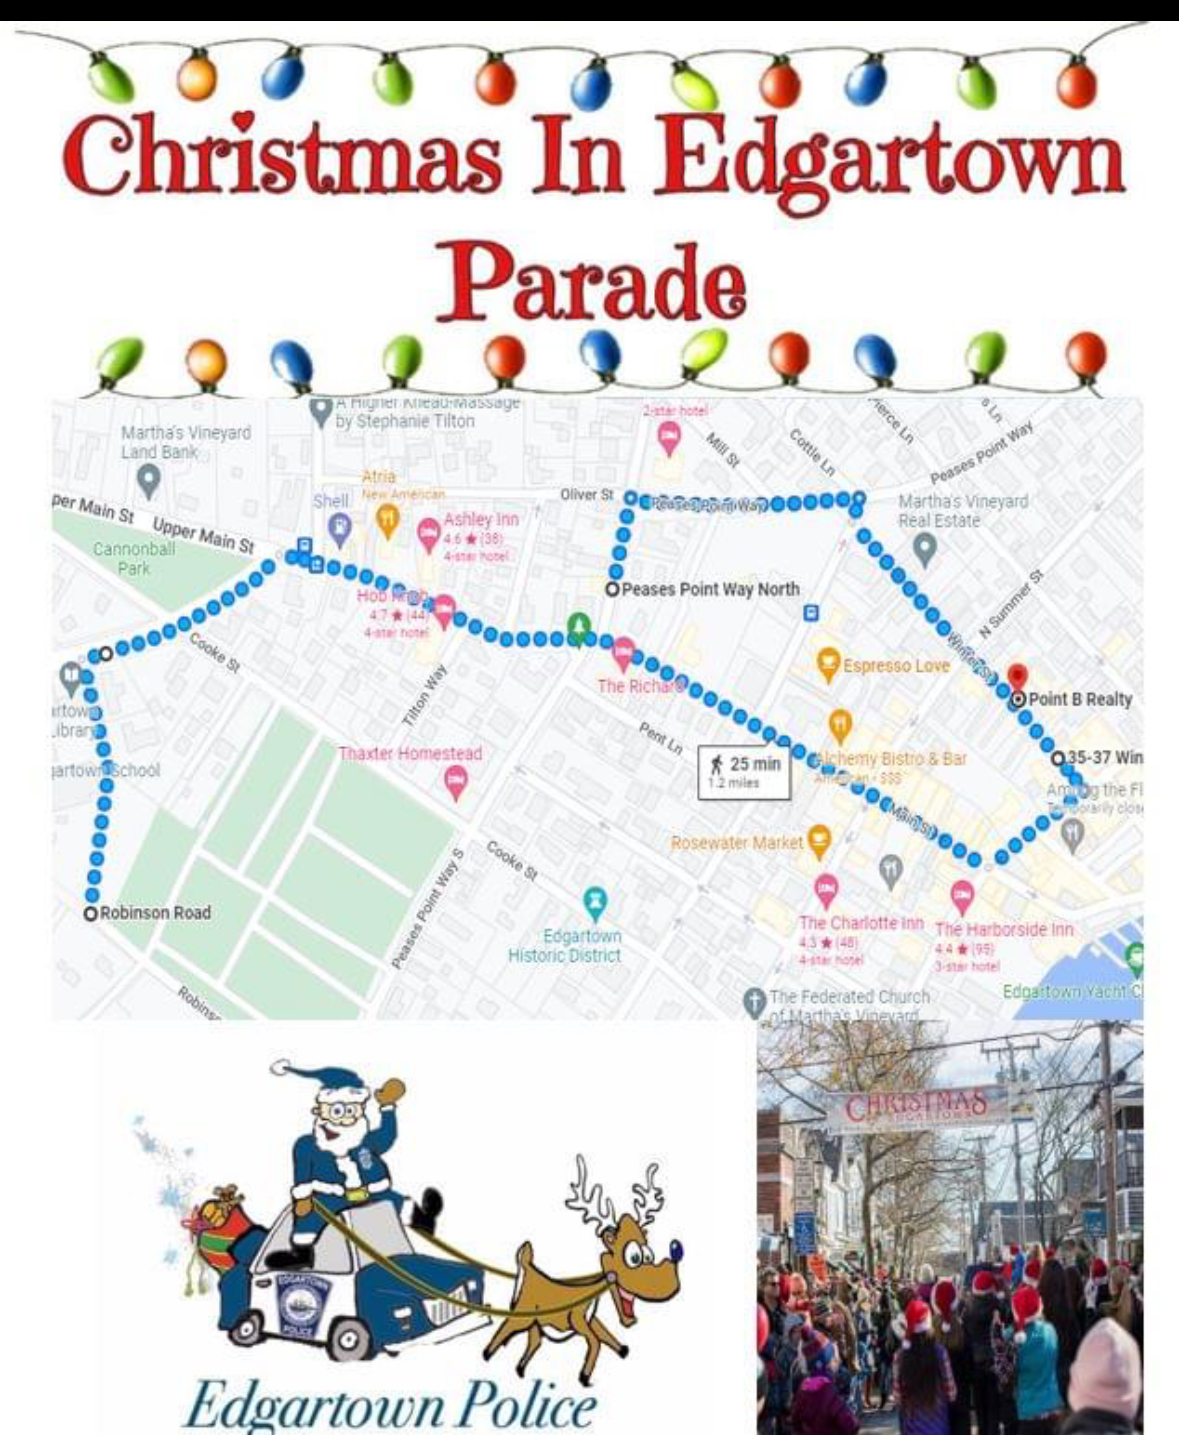 Edgartown parade route